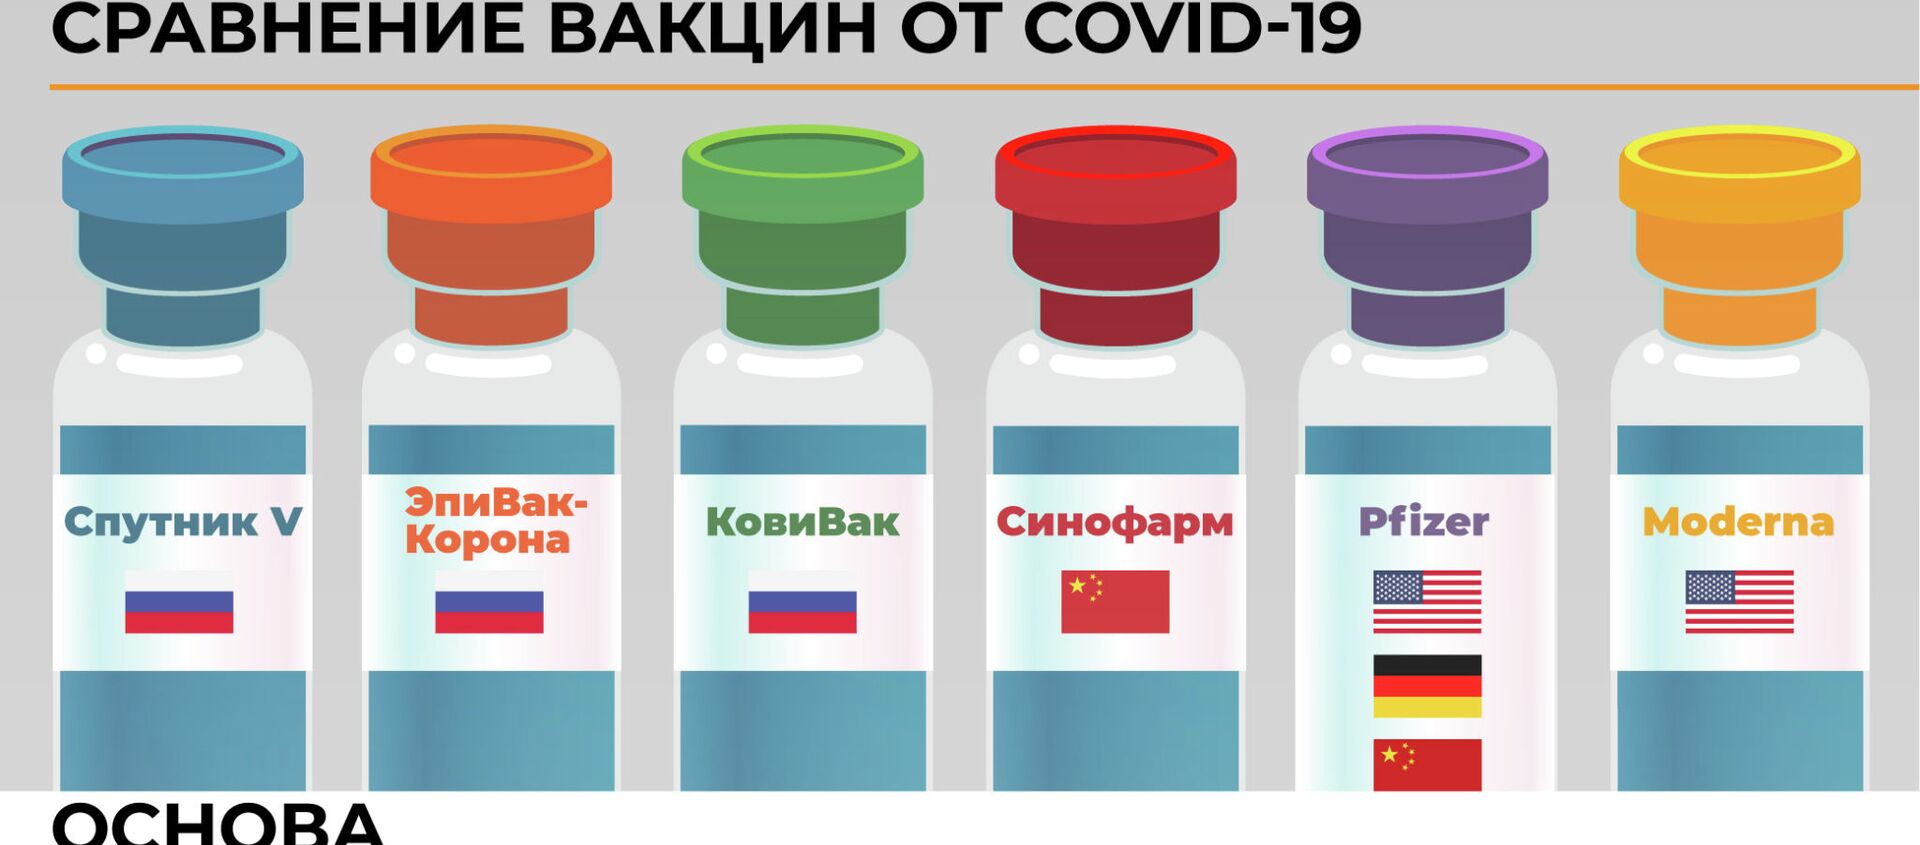 Какой вакциной лучше привиться? 5 главных мифов о вакцинации - Sputnik Кыргызстан, 1920, 18.02.2021